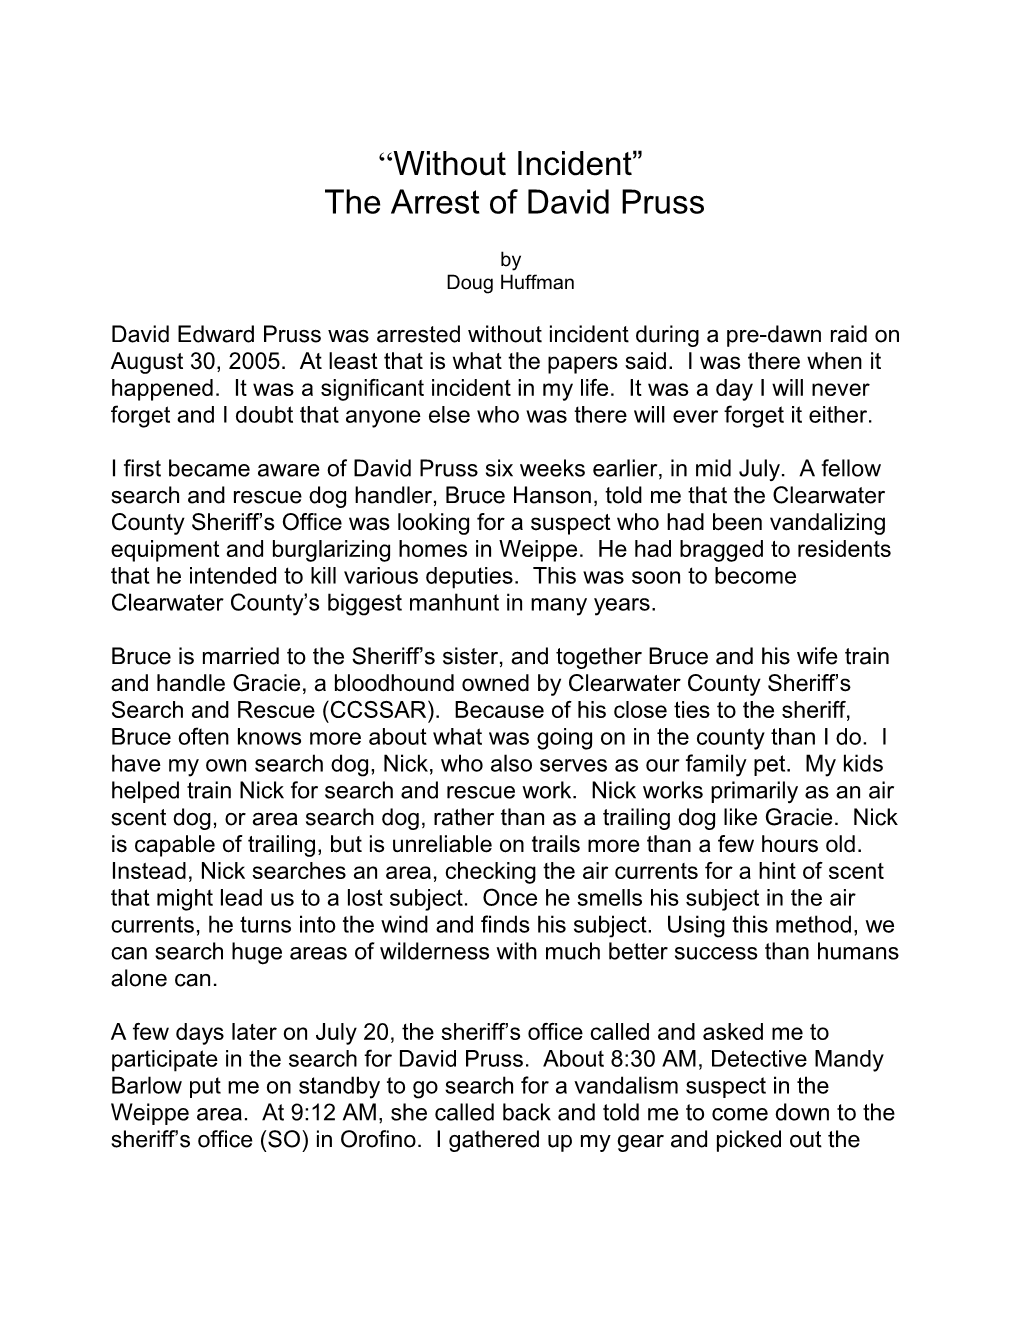 The Arrest of David Pruss